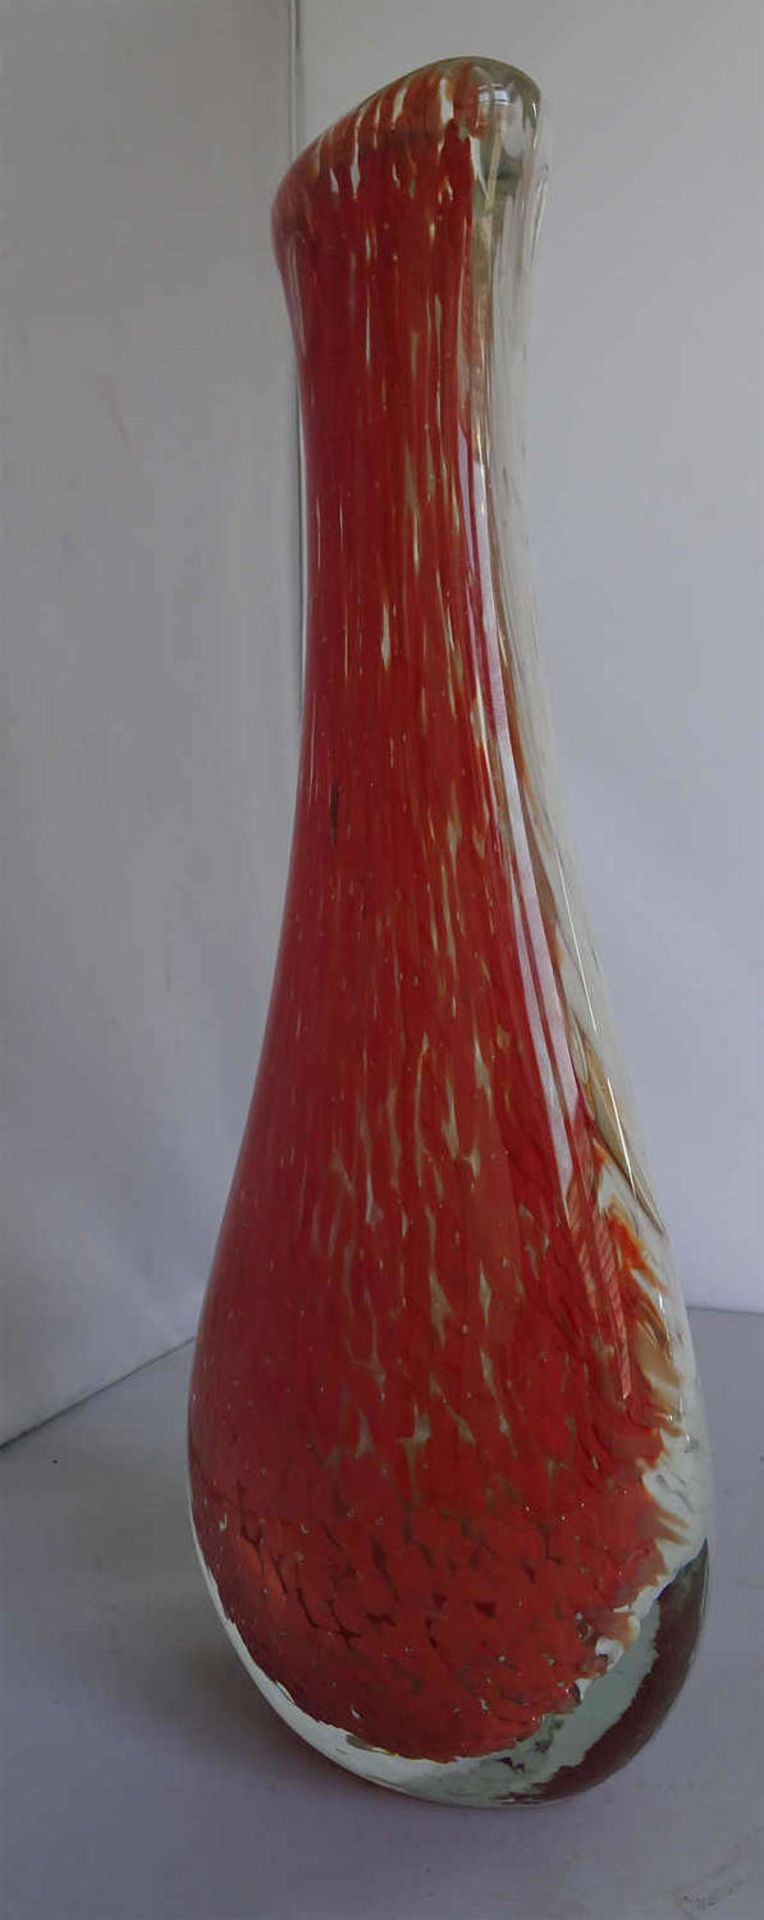 Murano Glasvase mit roten und weißen Einschmelzungen. Höhe ca. 29,5 cm. Sehr guter Zustand.Murano - Image 2 of 3